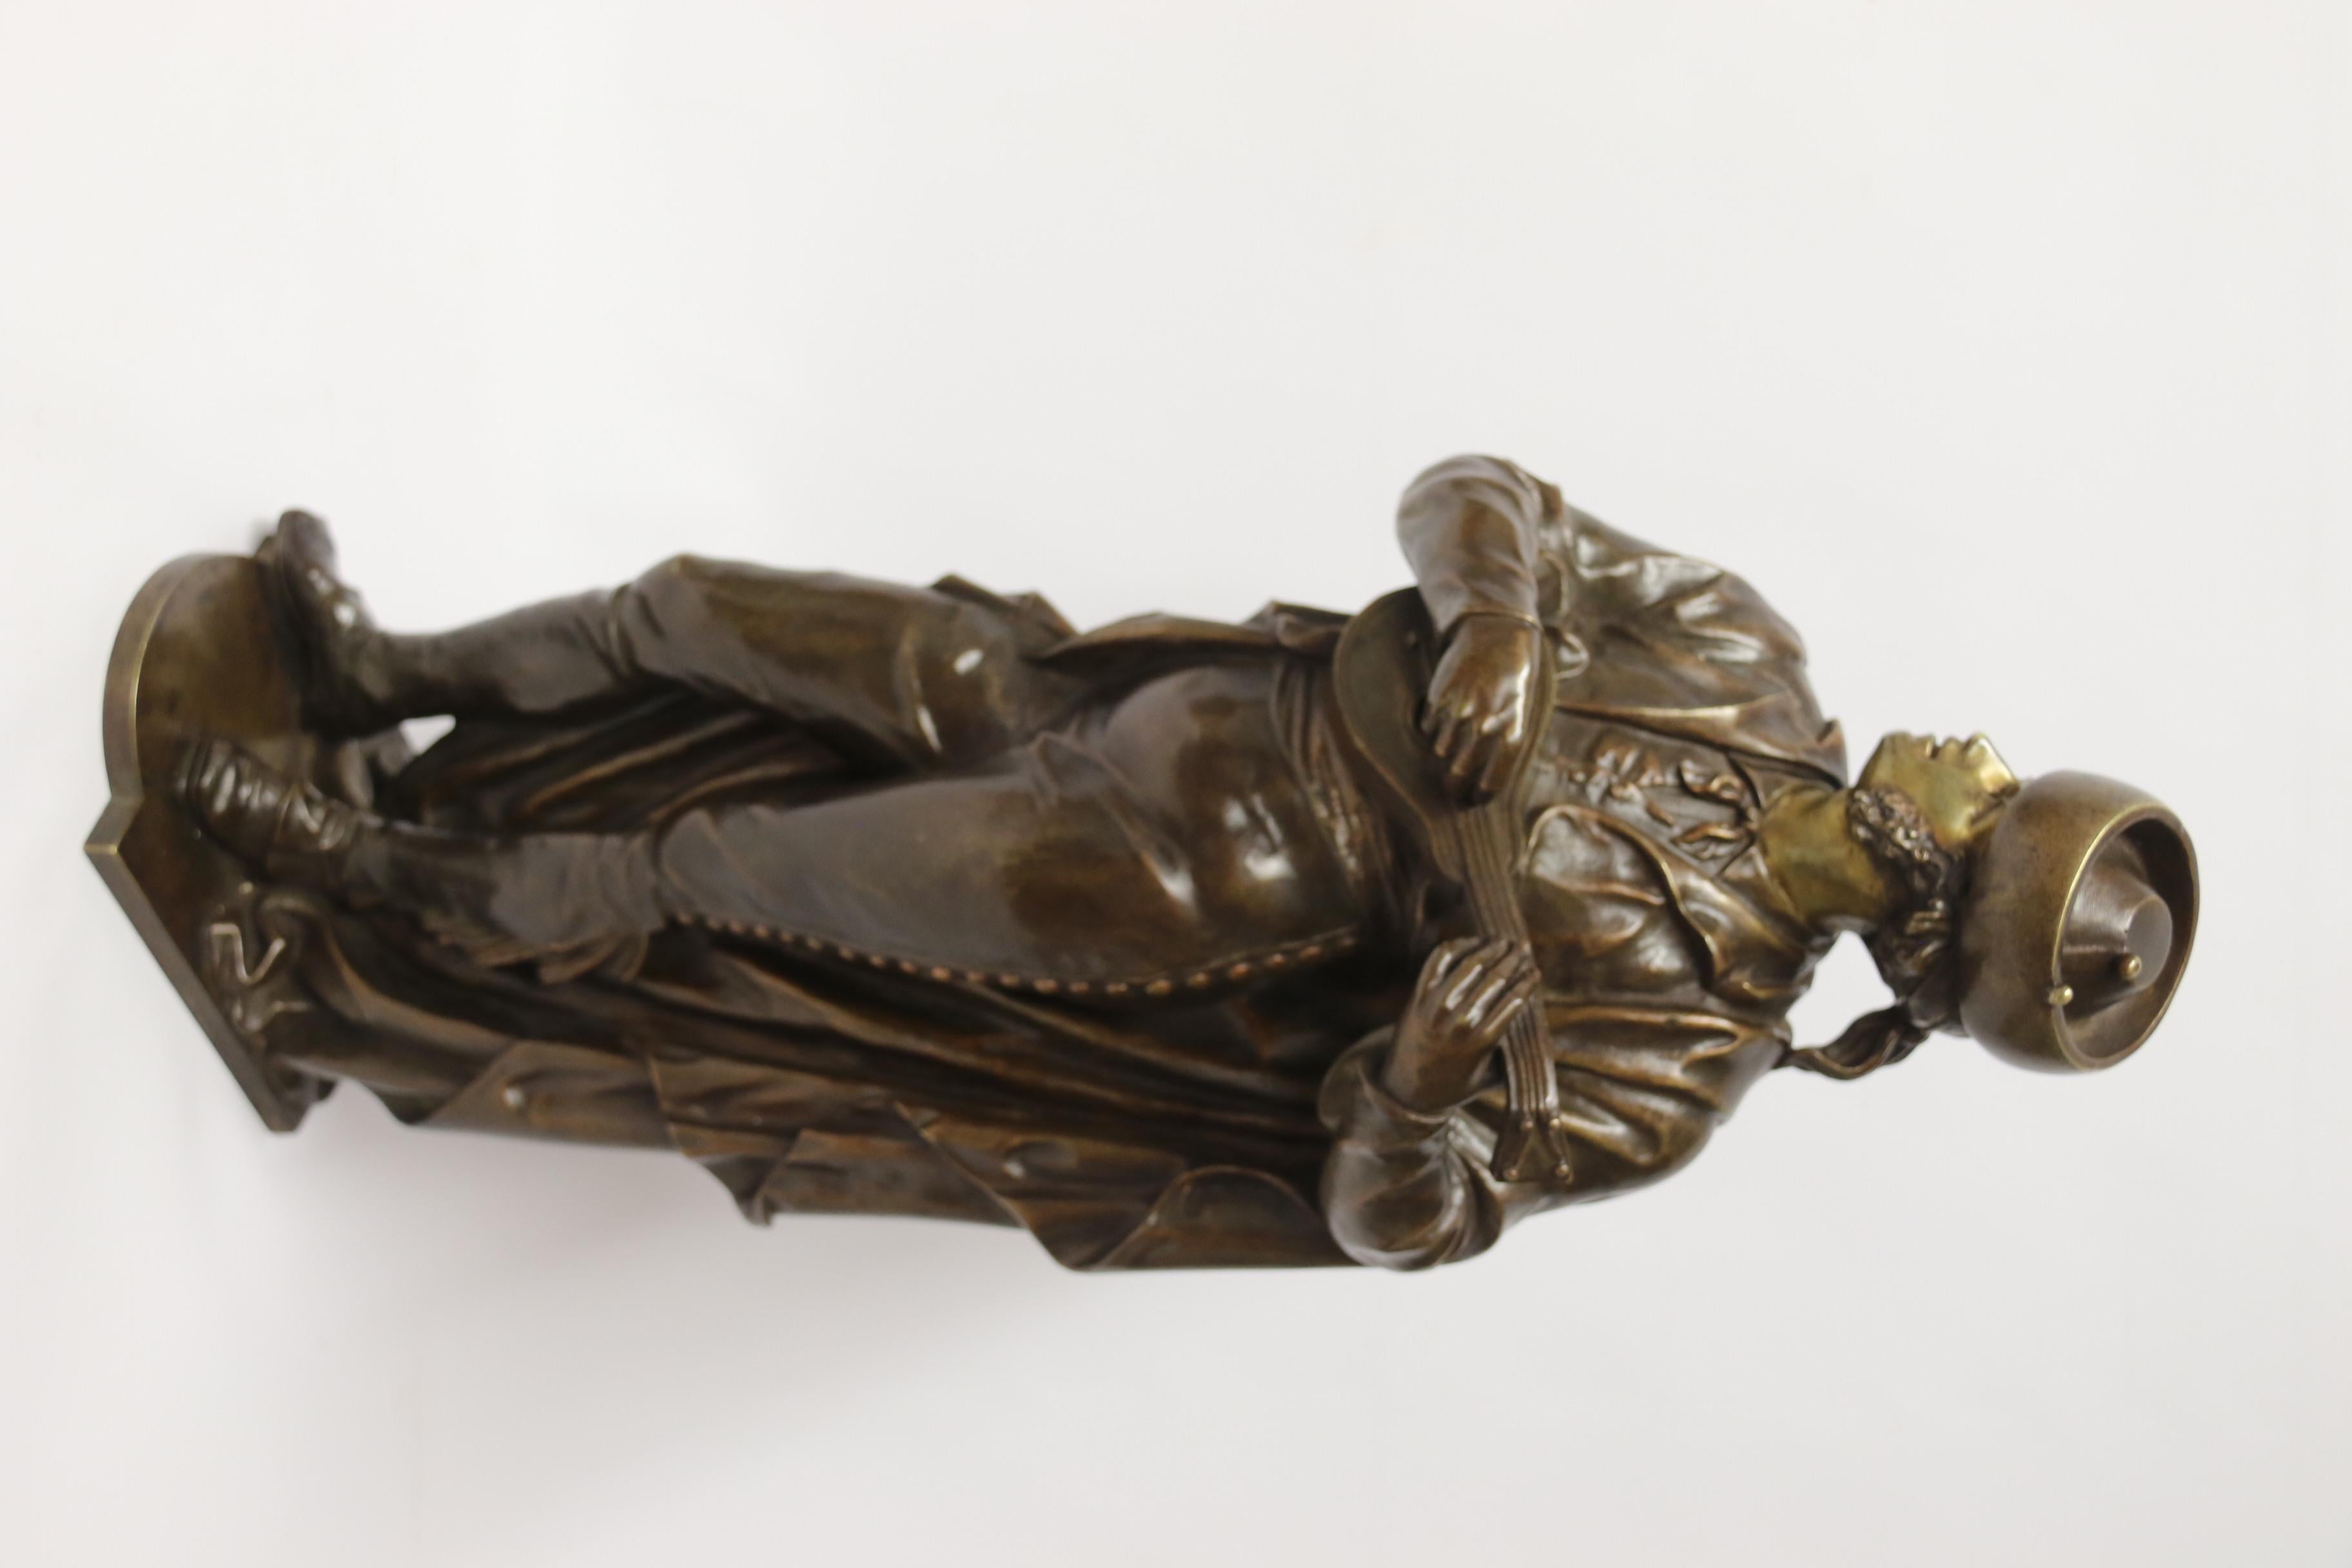 Une très belle étude en bronze de l'artiste et sculpteur espagnol Justo de Gandarias (1846 - 1933) intitulée le Musicien, très bien réalisée.

Elle représente une composition très agréable d'un musicien espagnol du 19e siècle, vêtu de façon